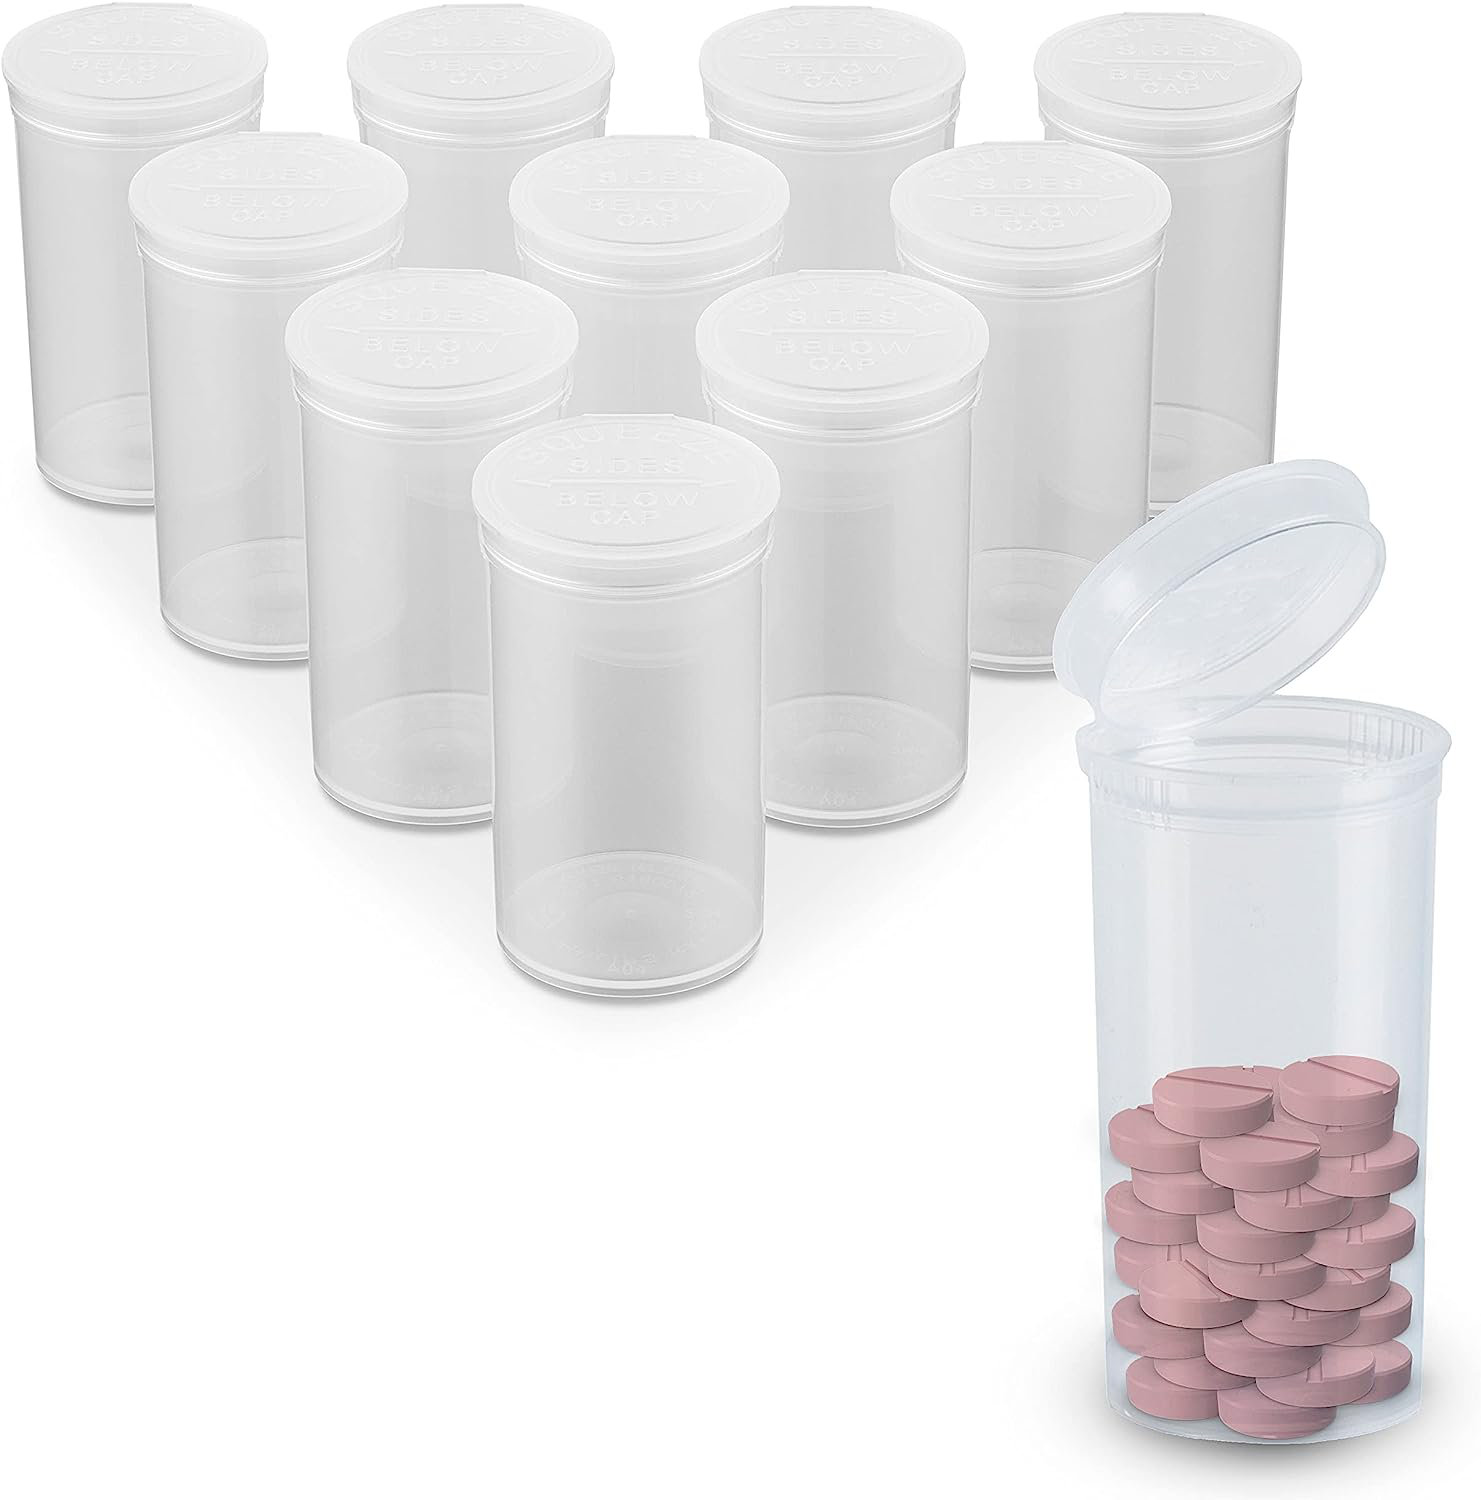 https://assets.wfcdn.com/im/86727025/compr-r85/2488/248805987/danetta-13-dram-pop-top-pill-bottlesempty-prescription-vials.jpg